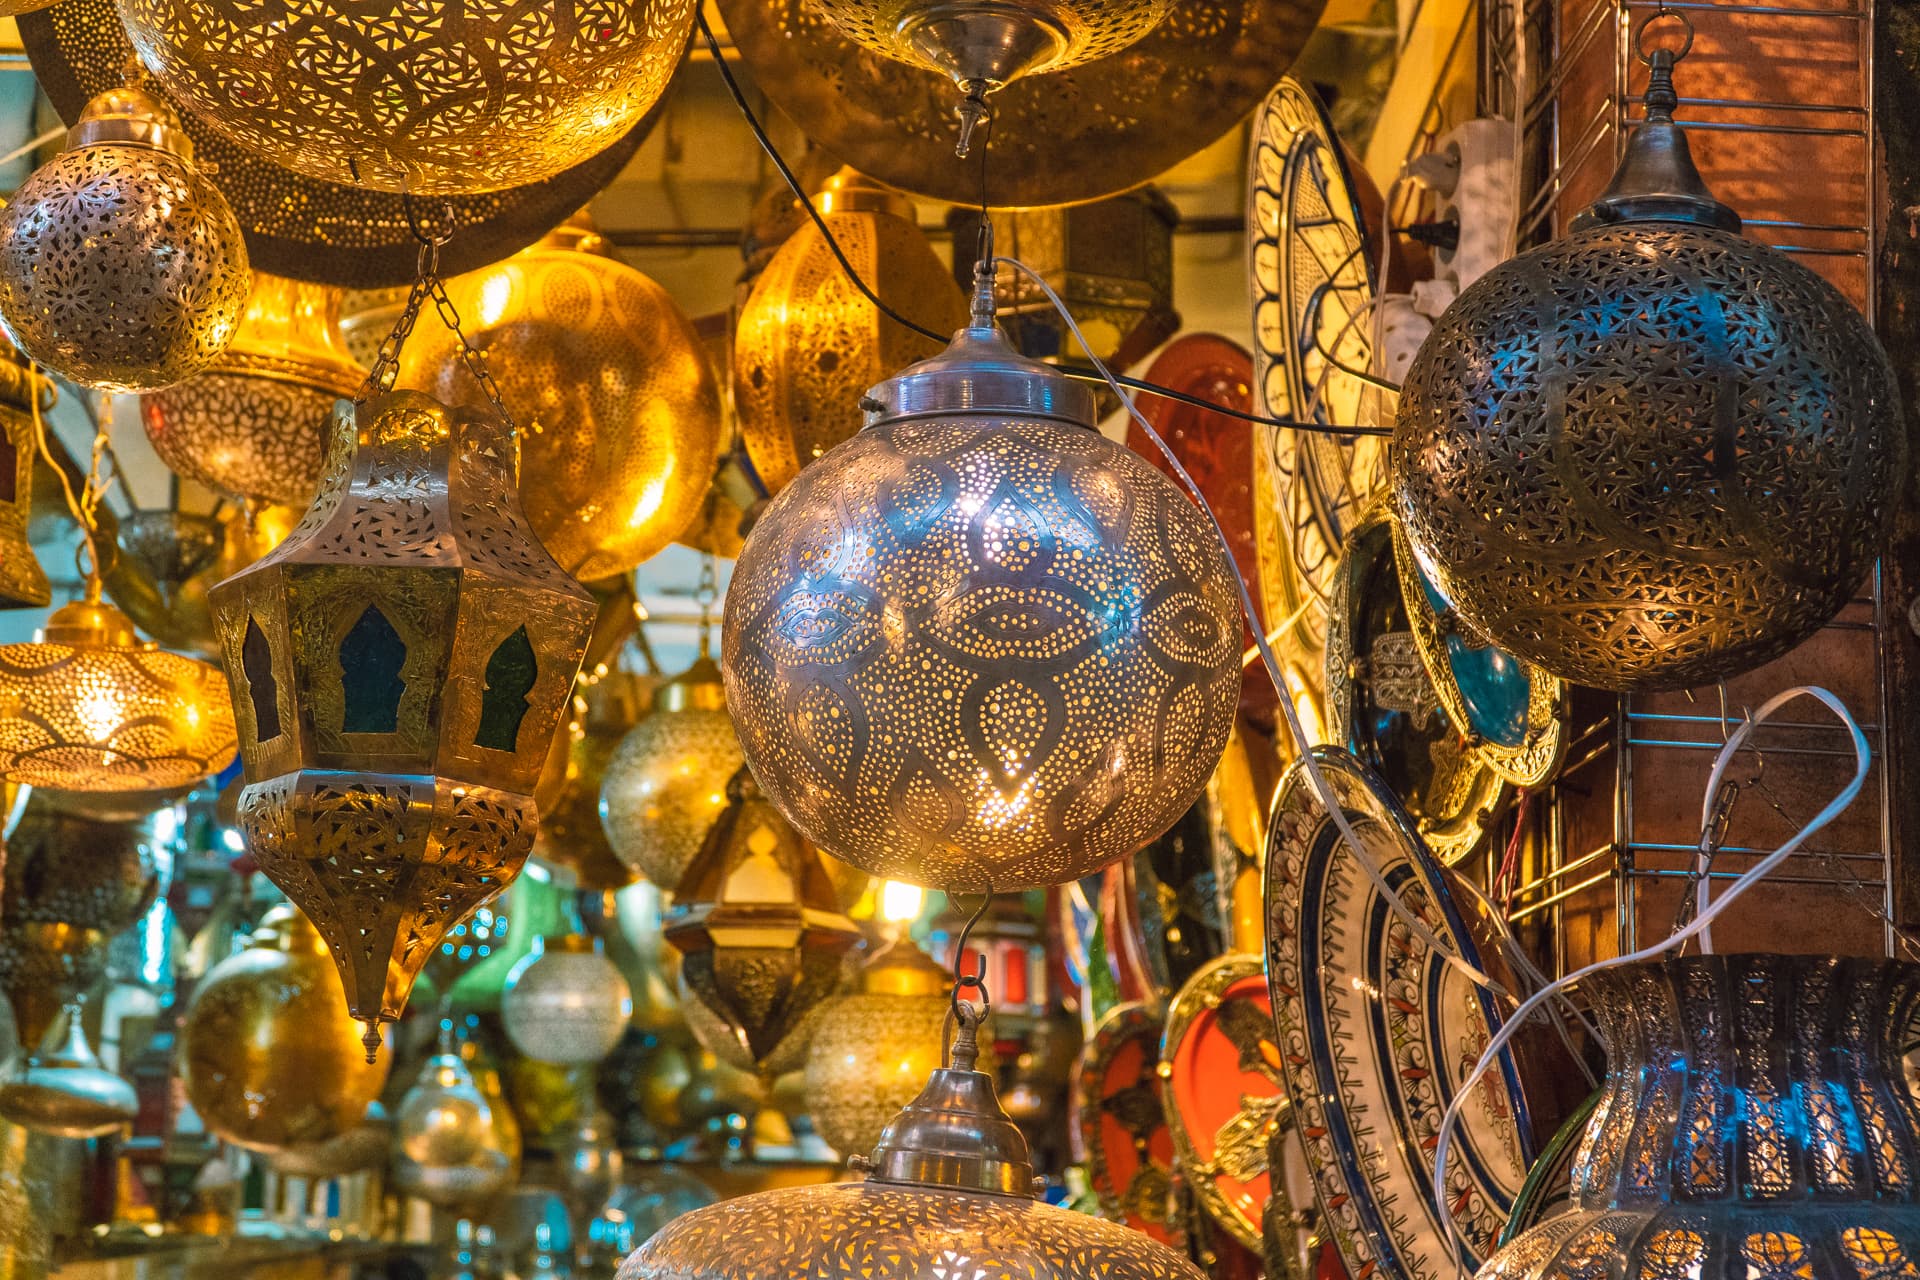 Targ w Marrakeszu | Plan wyjazdu do Maroko